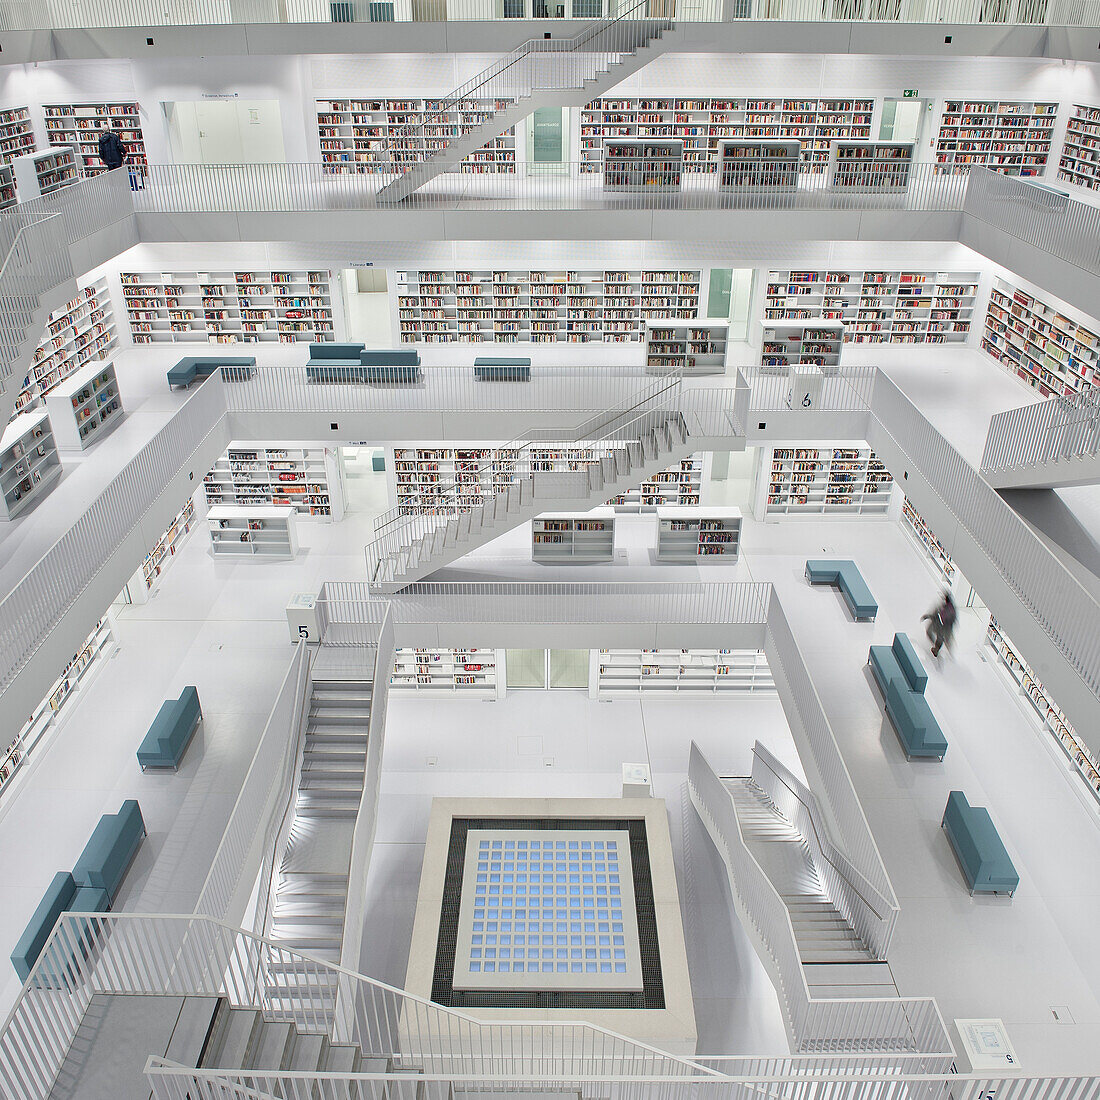 Innenraum der Neuen Stadtbibliothek Stuttgart, Baden-Württemberg, Deutschland, Europa